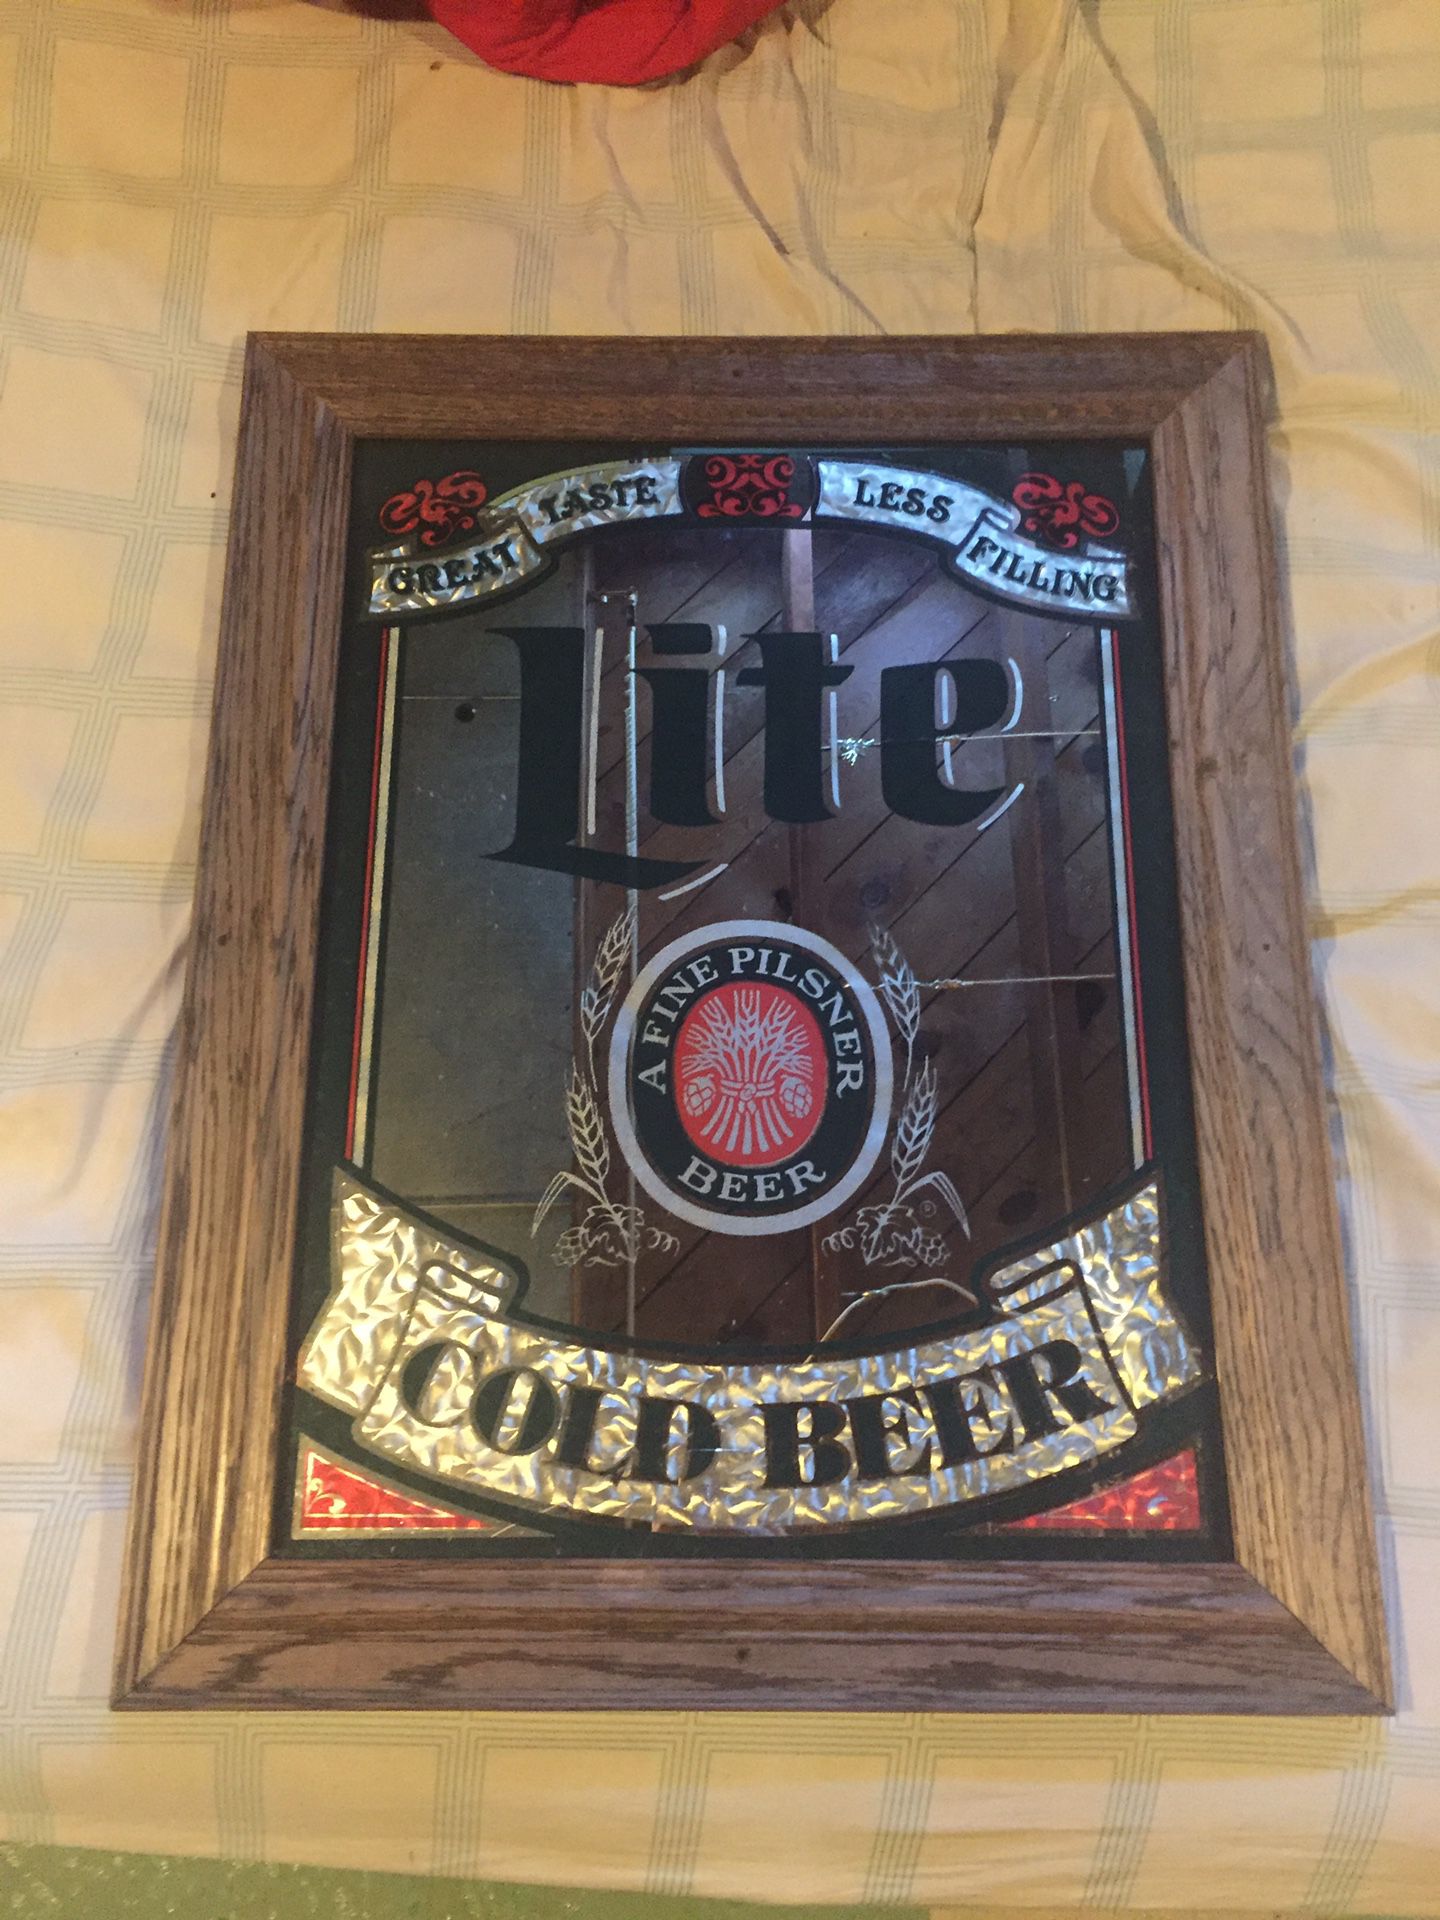 Beer mirror sign